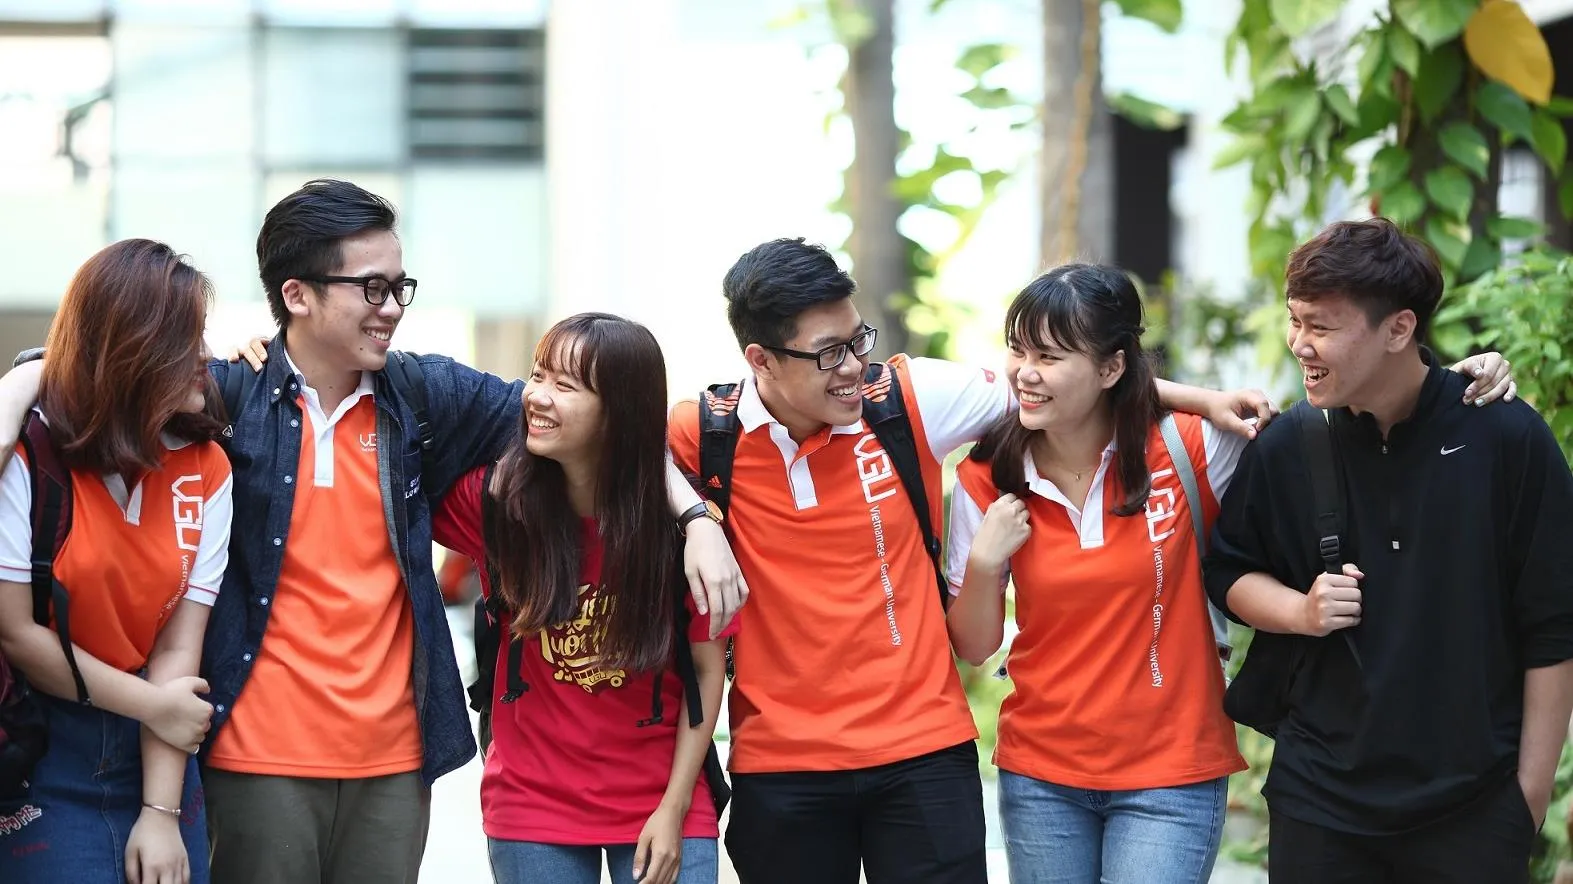 Tuyển sinh 2021: Trường Đại học Việt Đức chỉ tuyển thí sinh đạt chuẩn năng lực tiếng Anh đầu vào